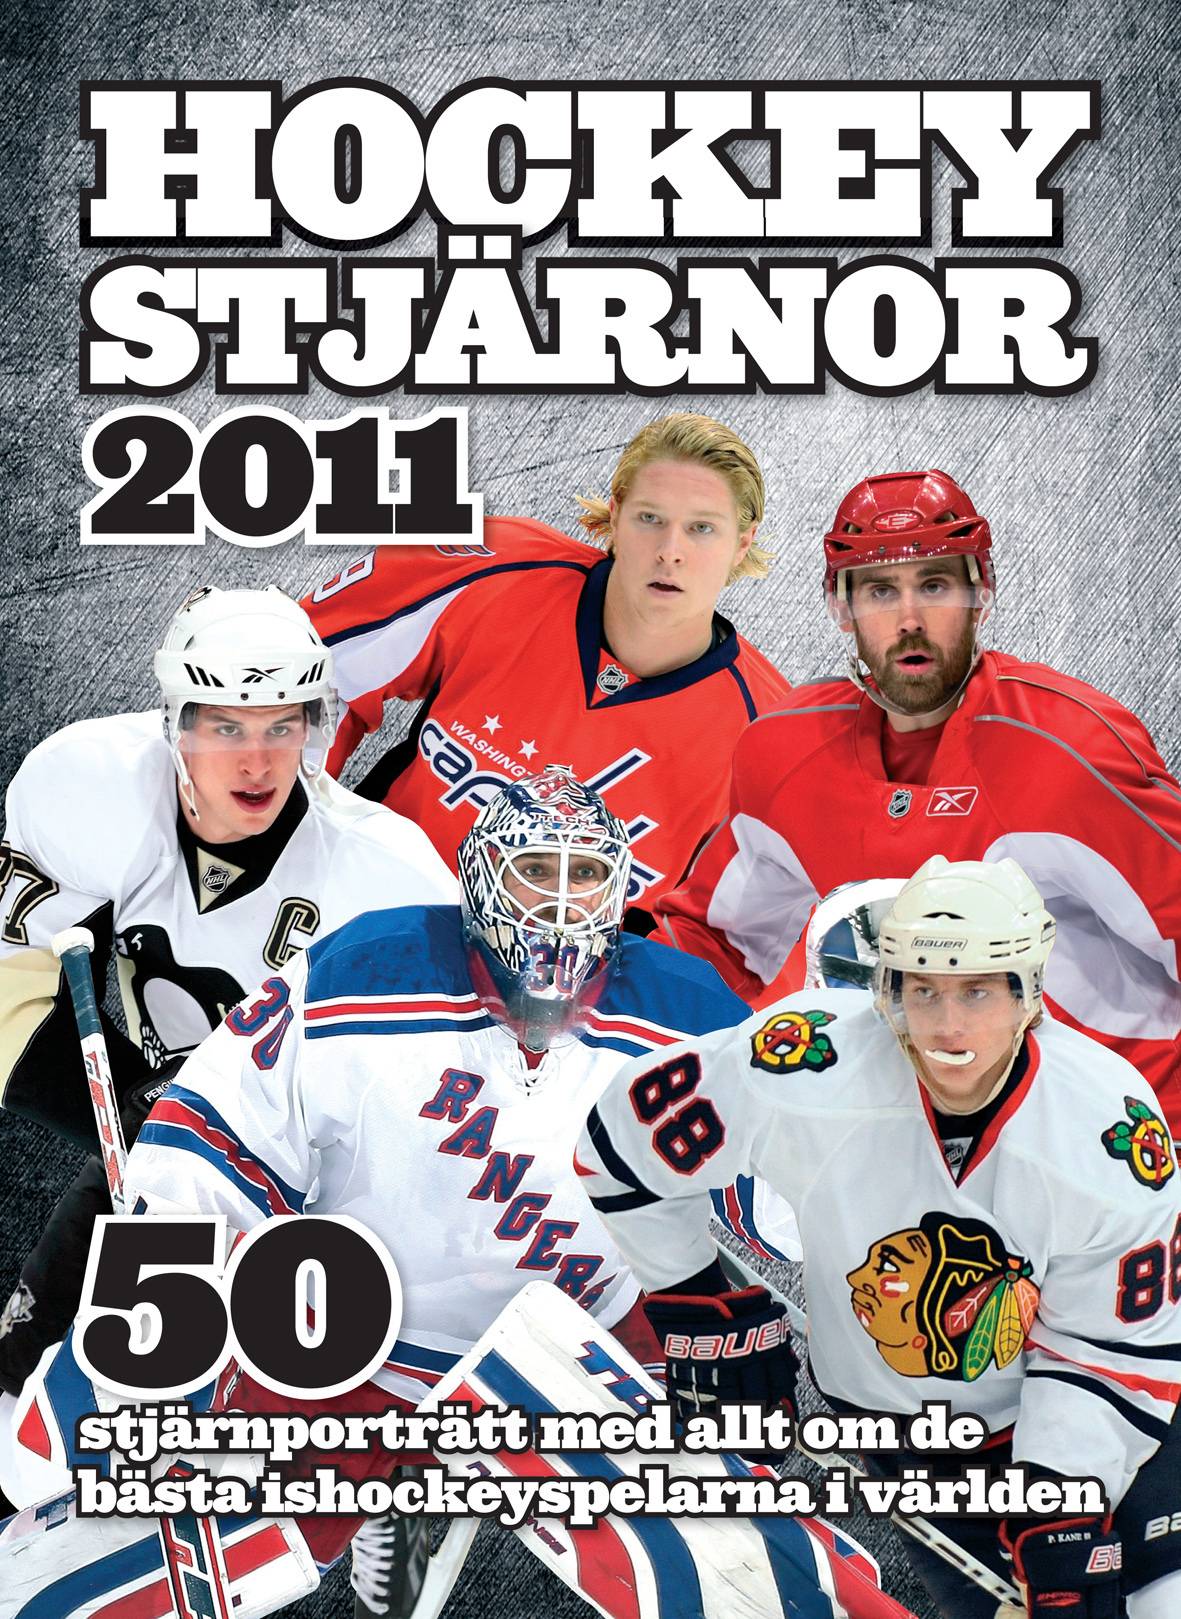 Hockeystjärnor 2011